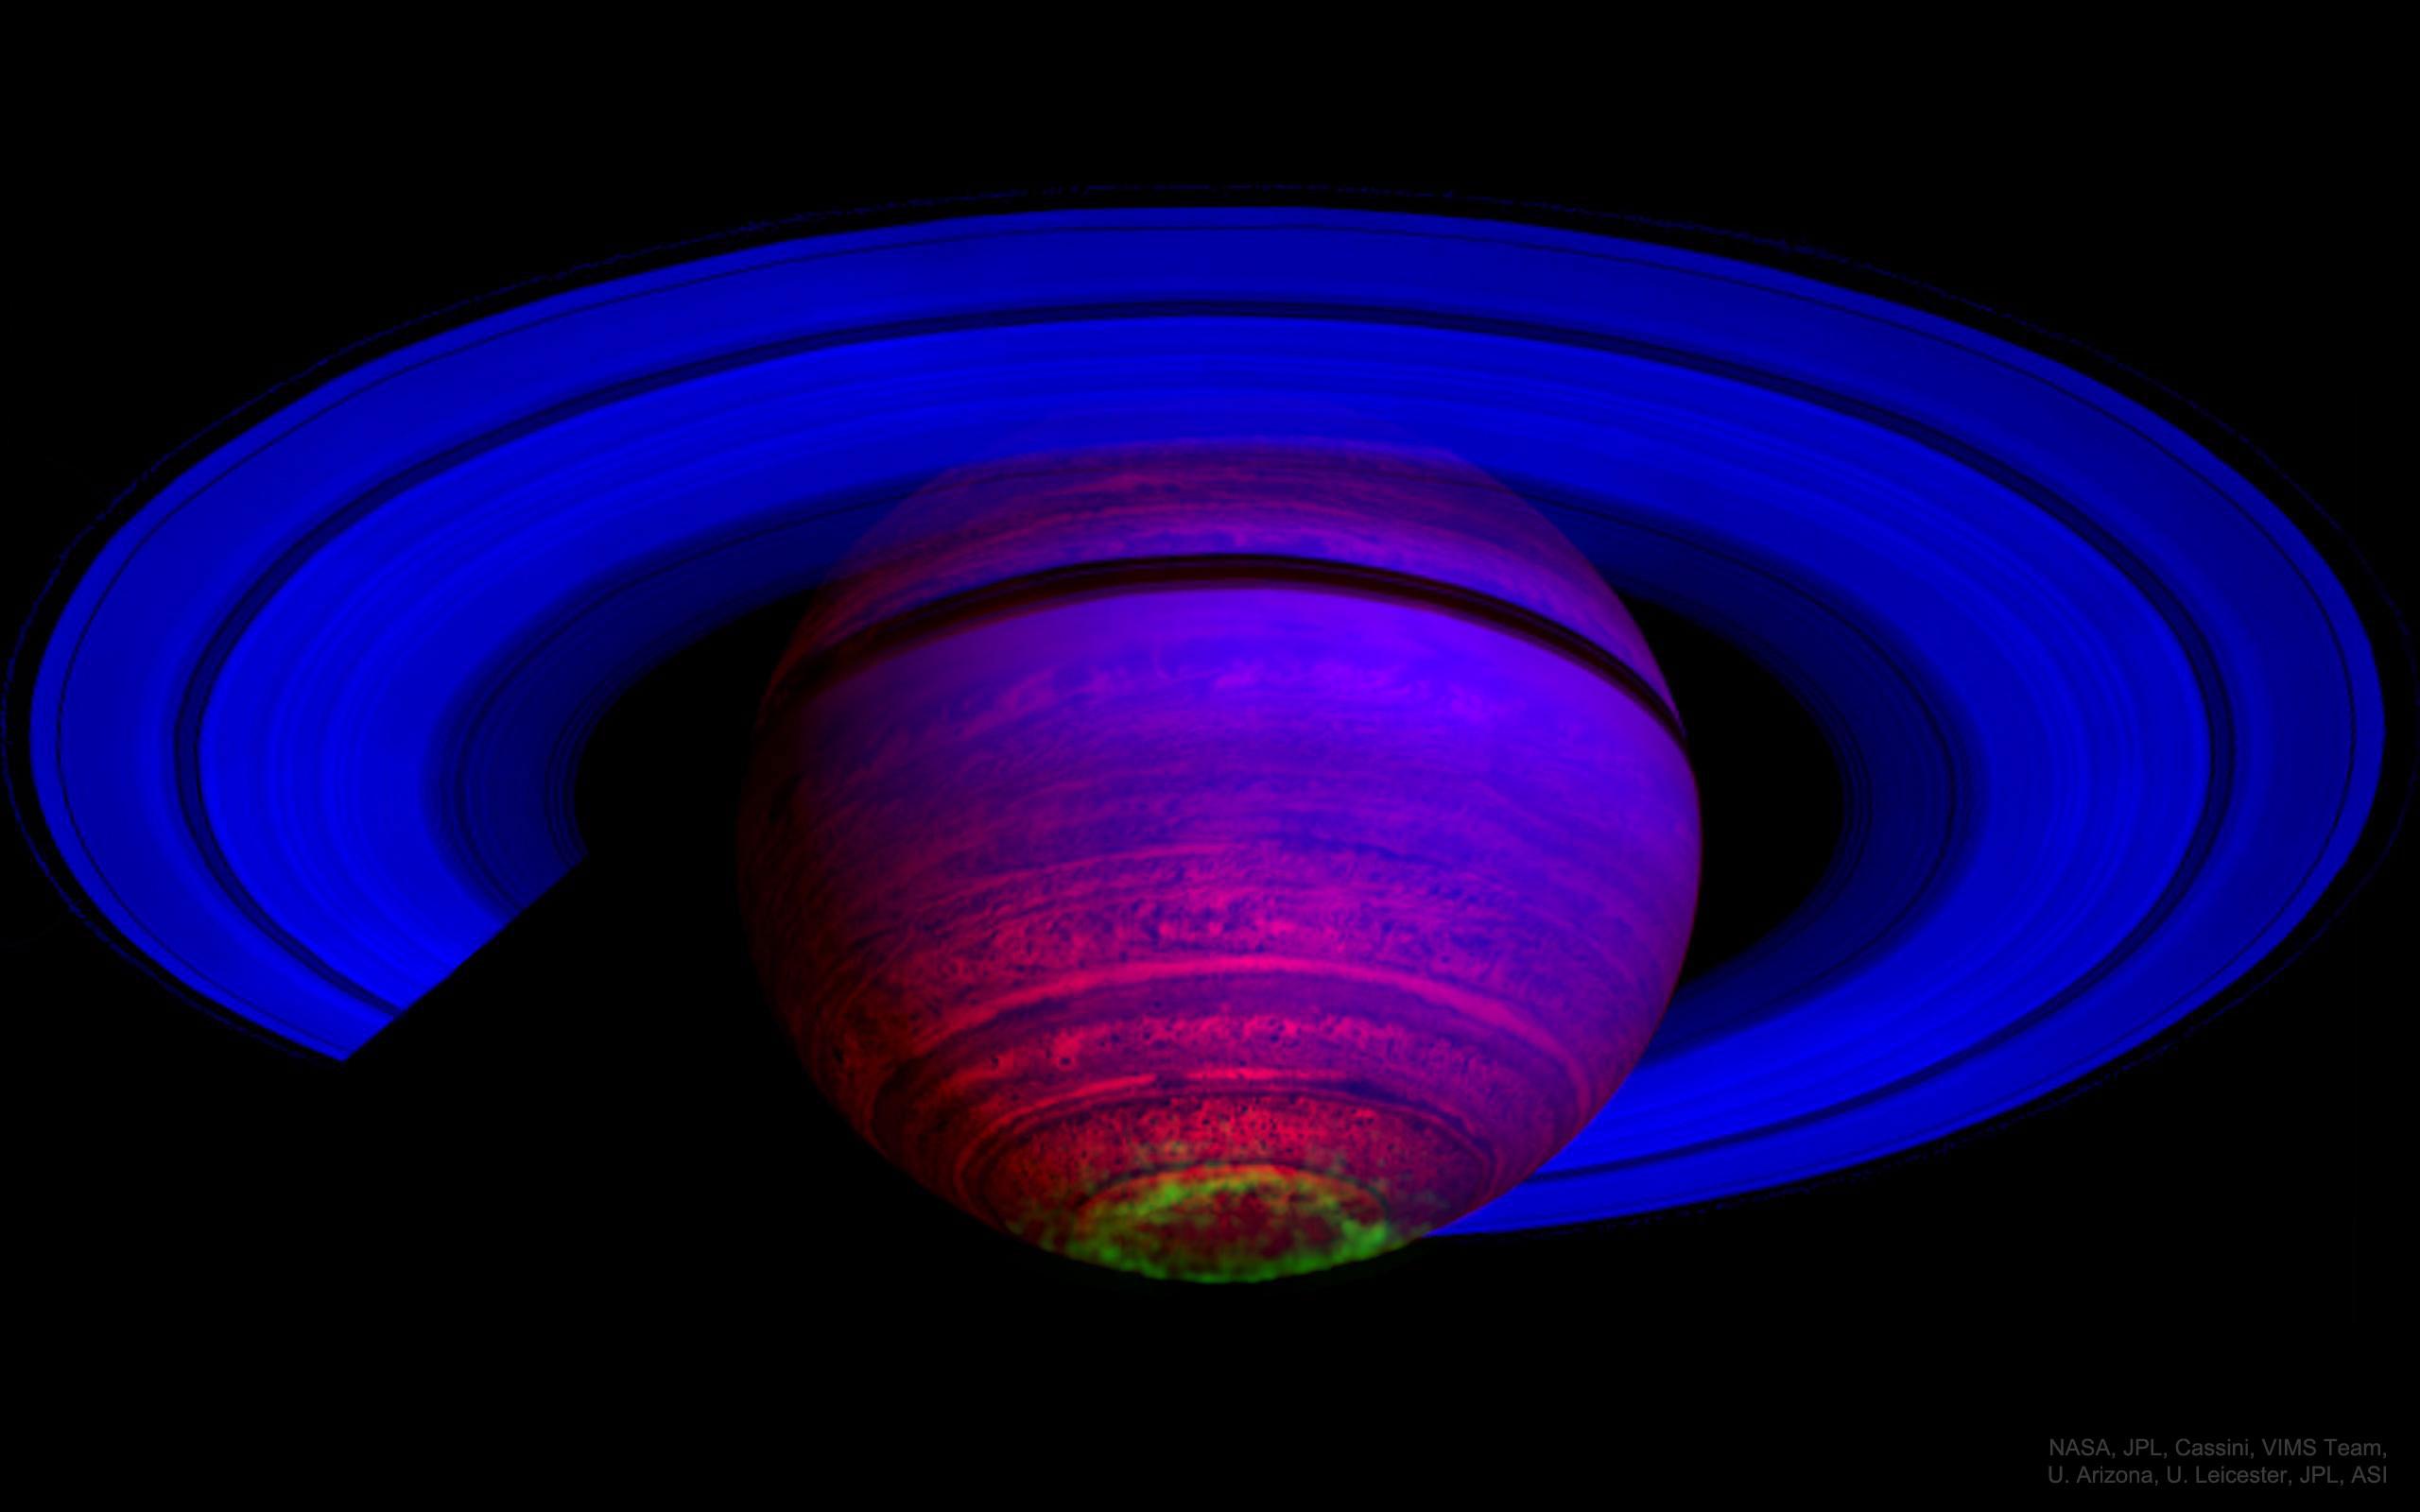 صورة بالأشعة تحت الحمراء لكوكب زحل تظهره بألوان غير حقيقيّة، حيث تبدو الأشفاق القُطبيّة للكوكب واضحة بألوان عدّة تجاه الجنوب. 